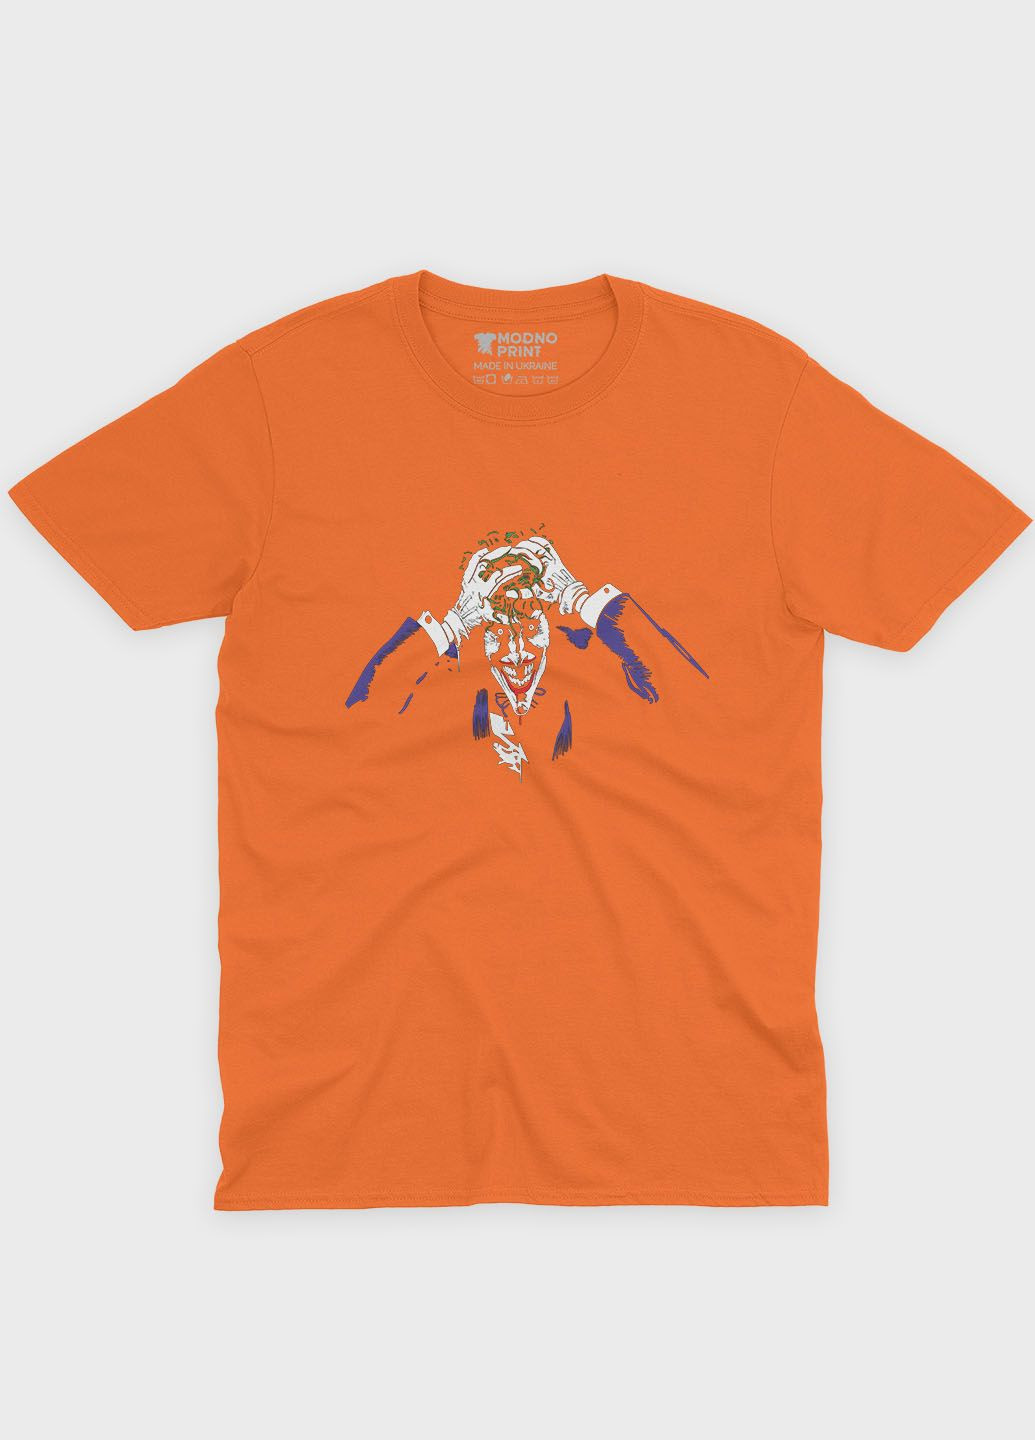 Оранжевая демисезонная футболка для девочки с принтом супервора - джокер (ts001-1-ora-006-005-008-g) Modno